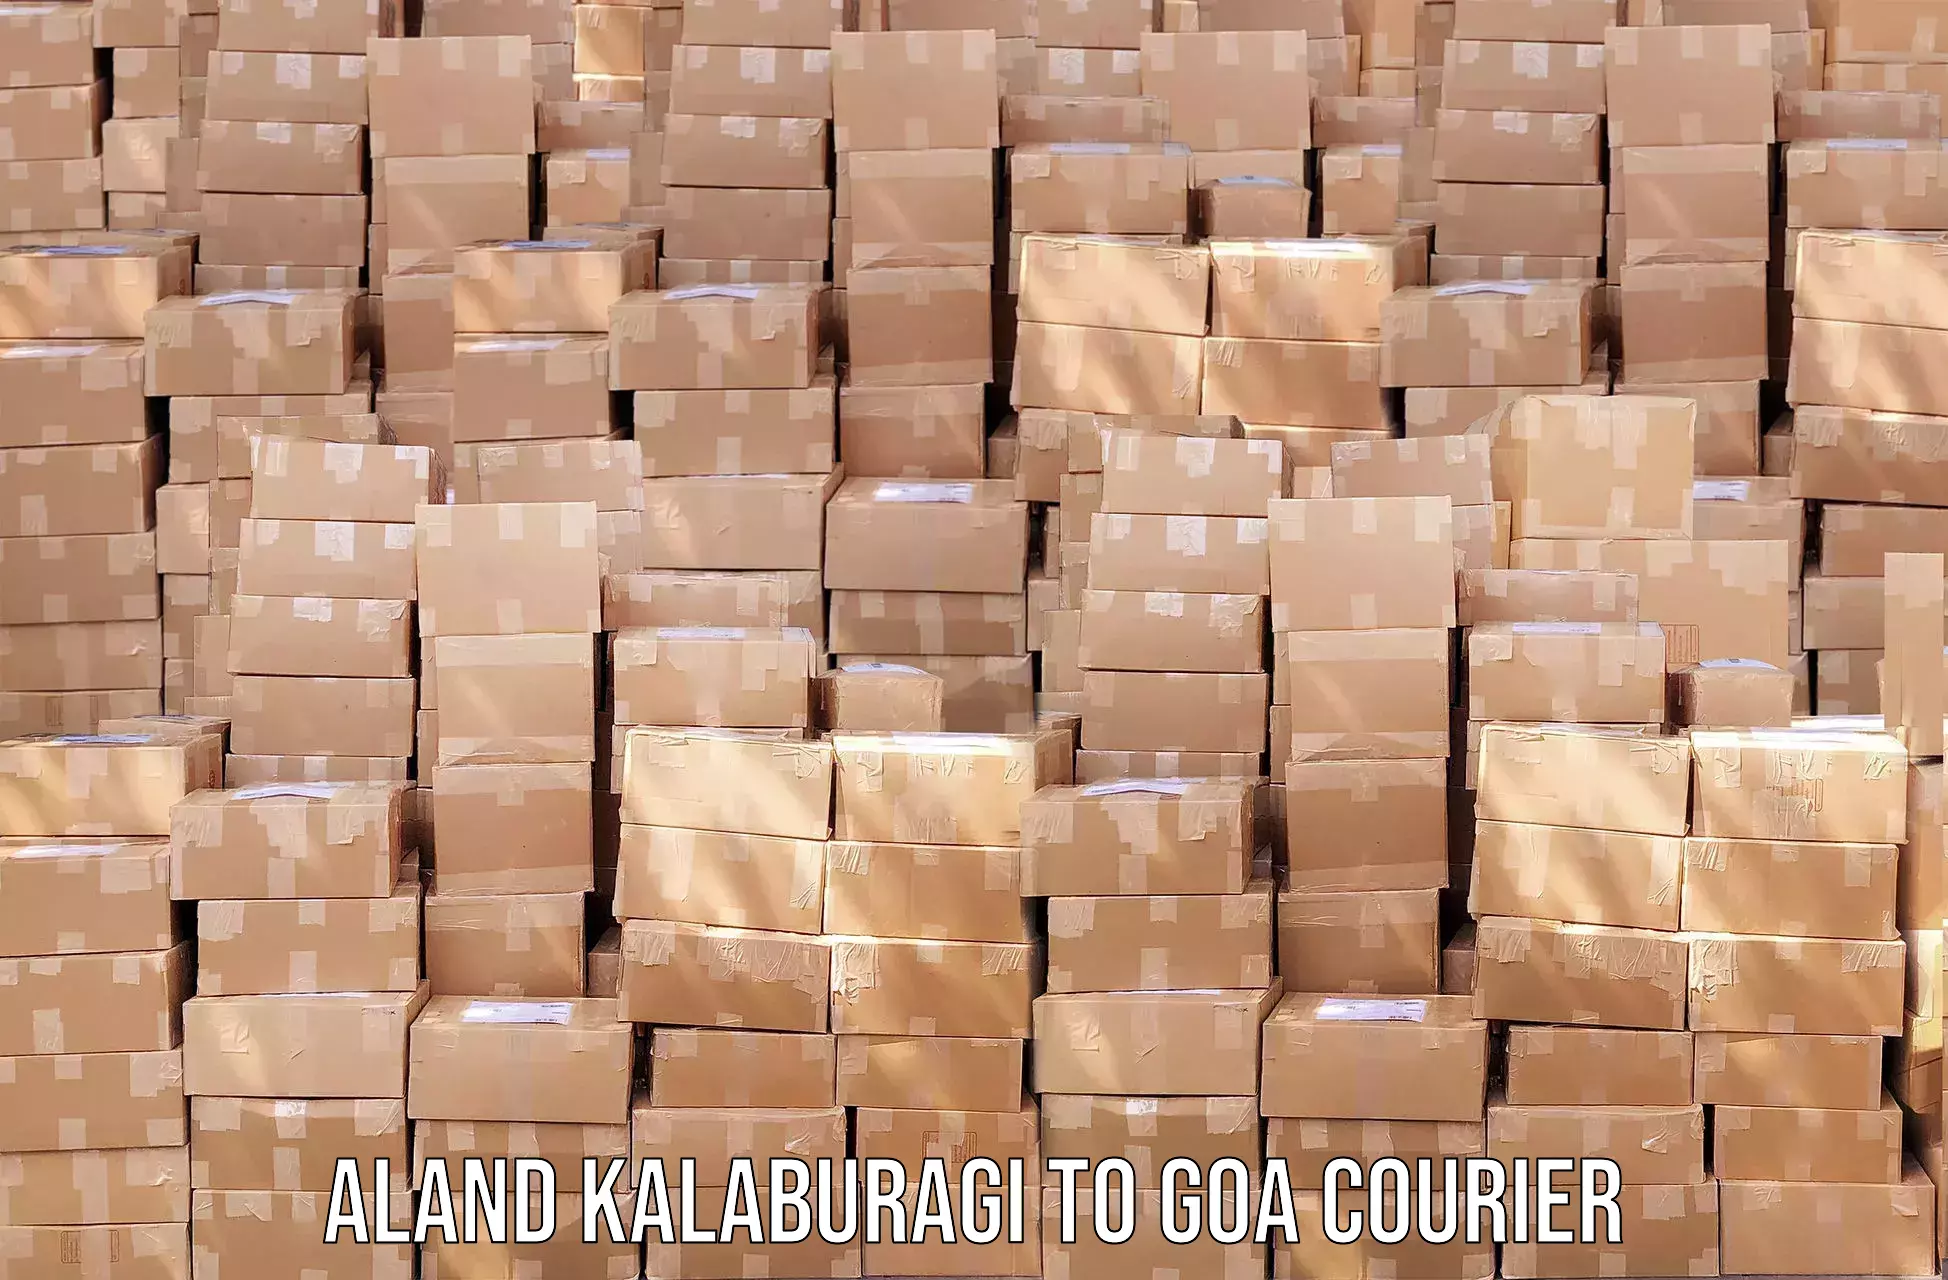 Cargo delivery service Aland Kalaburagi to South Goa